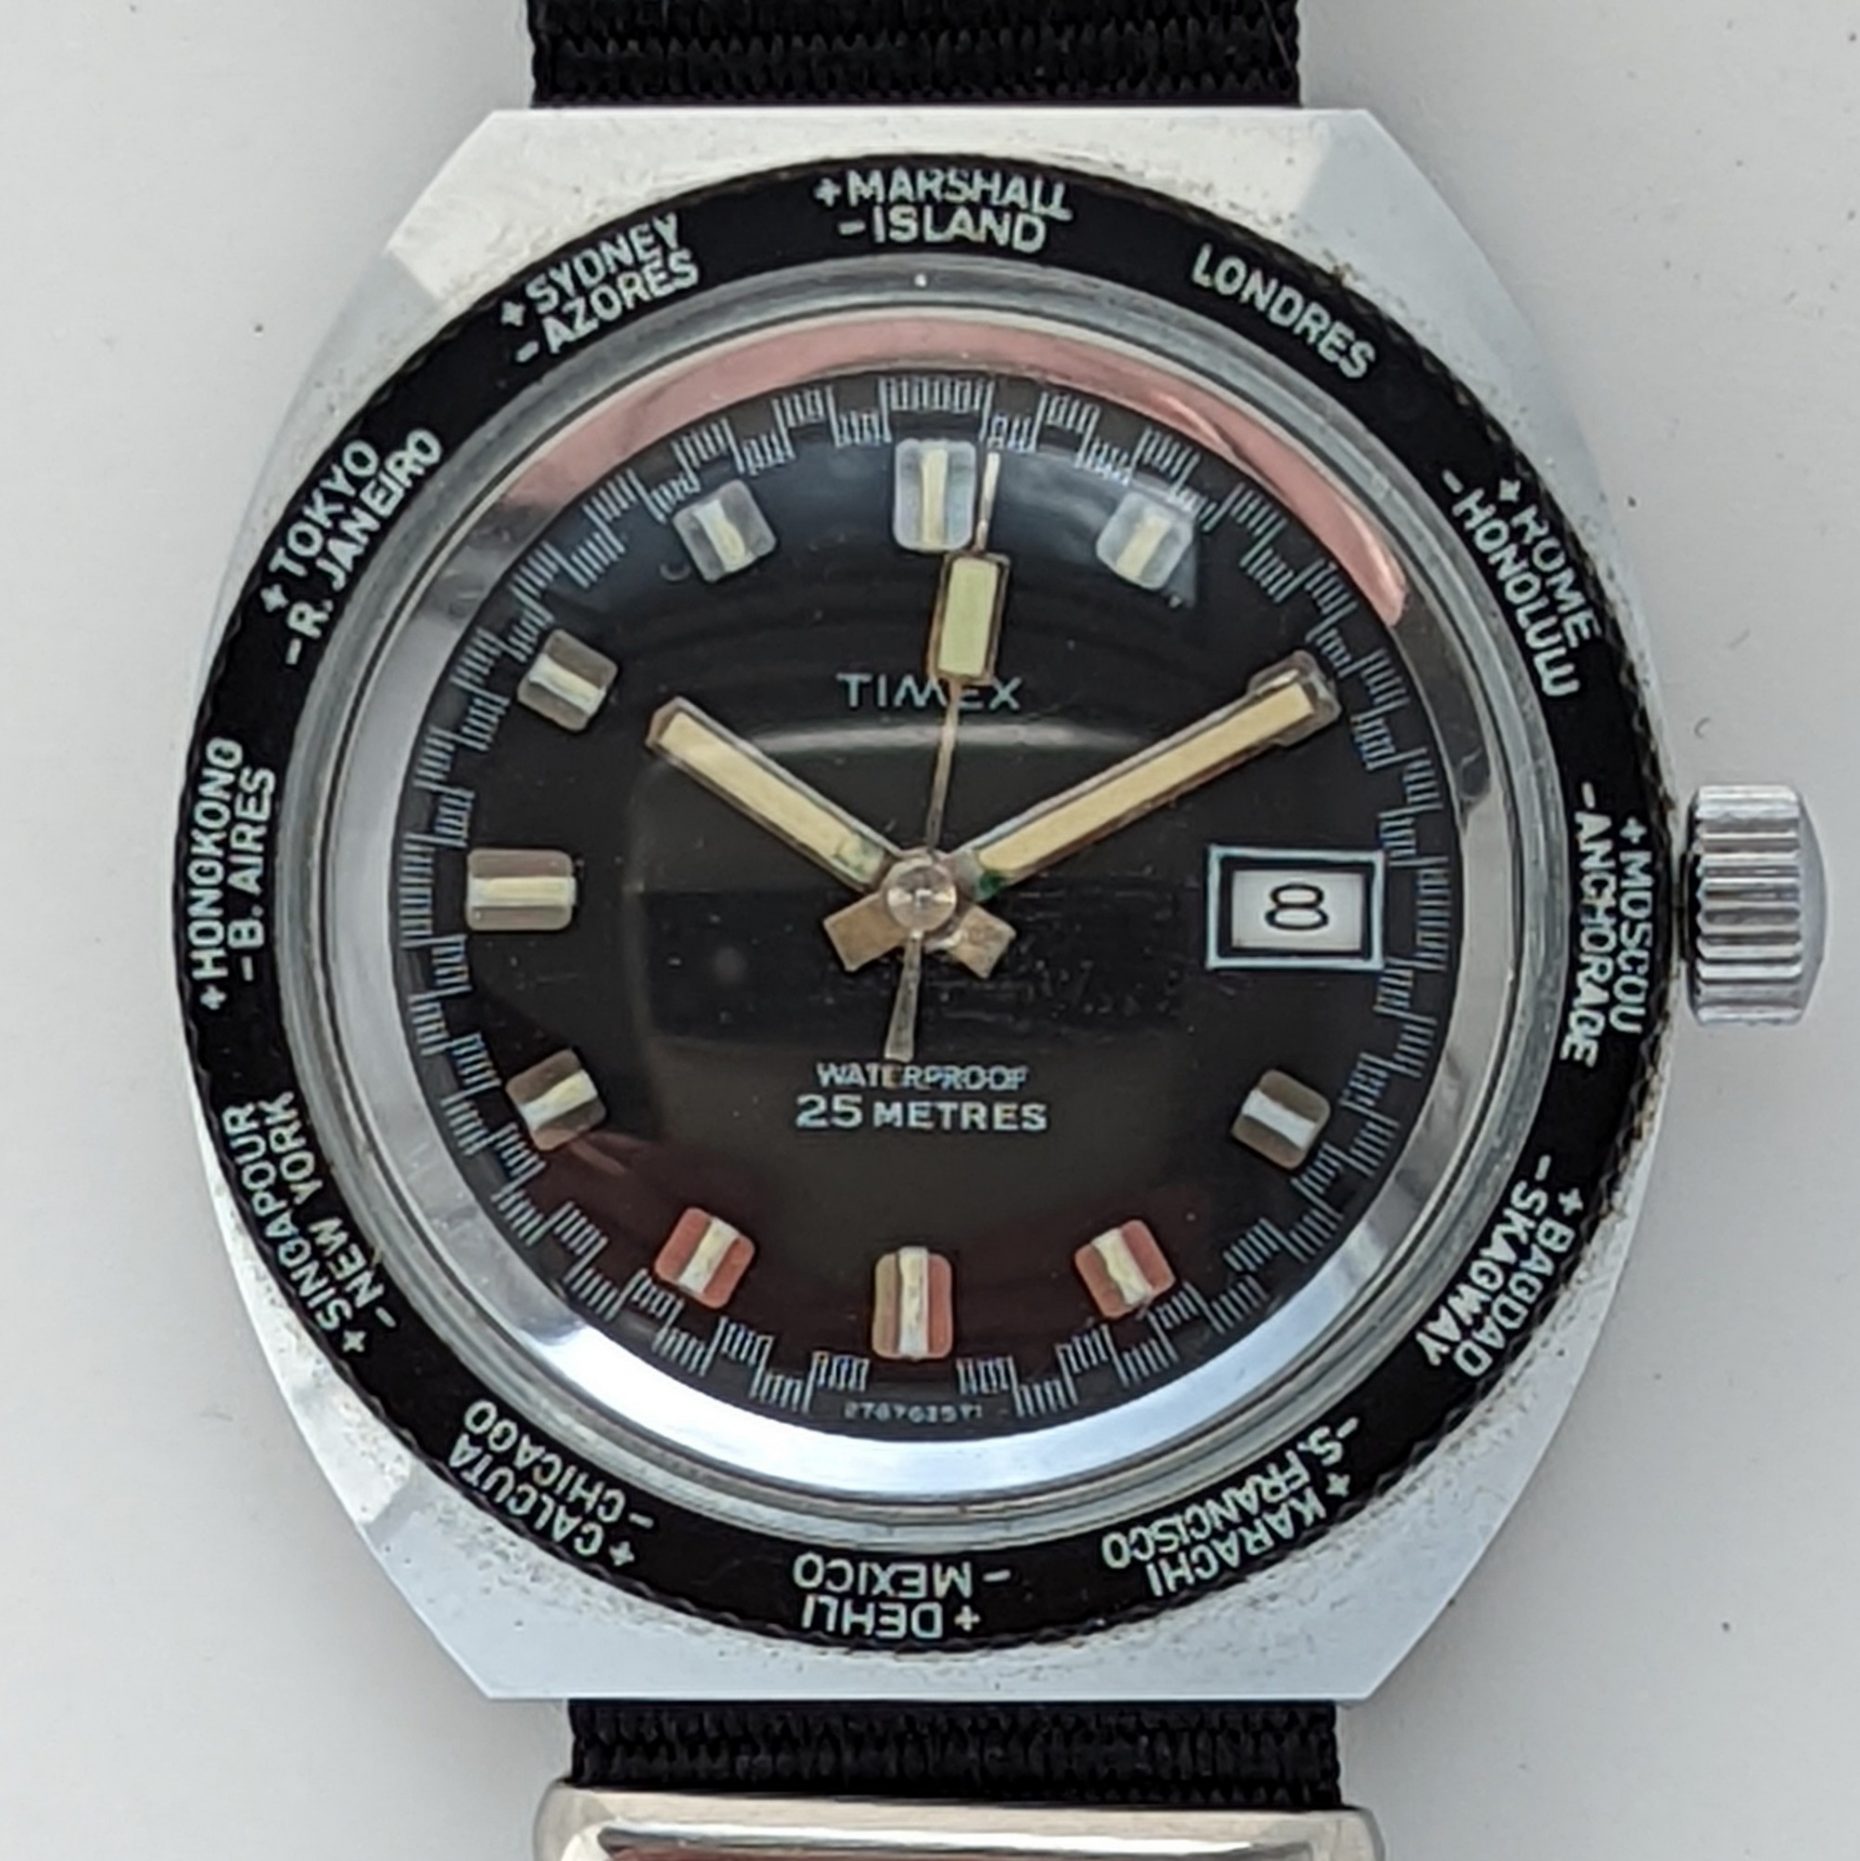 Timex Marlin 27676 2571 [1971]